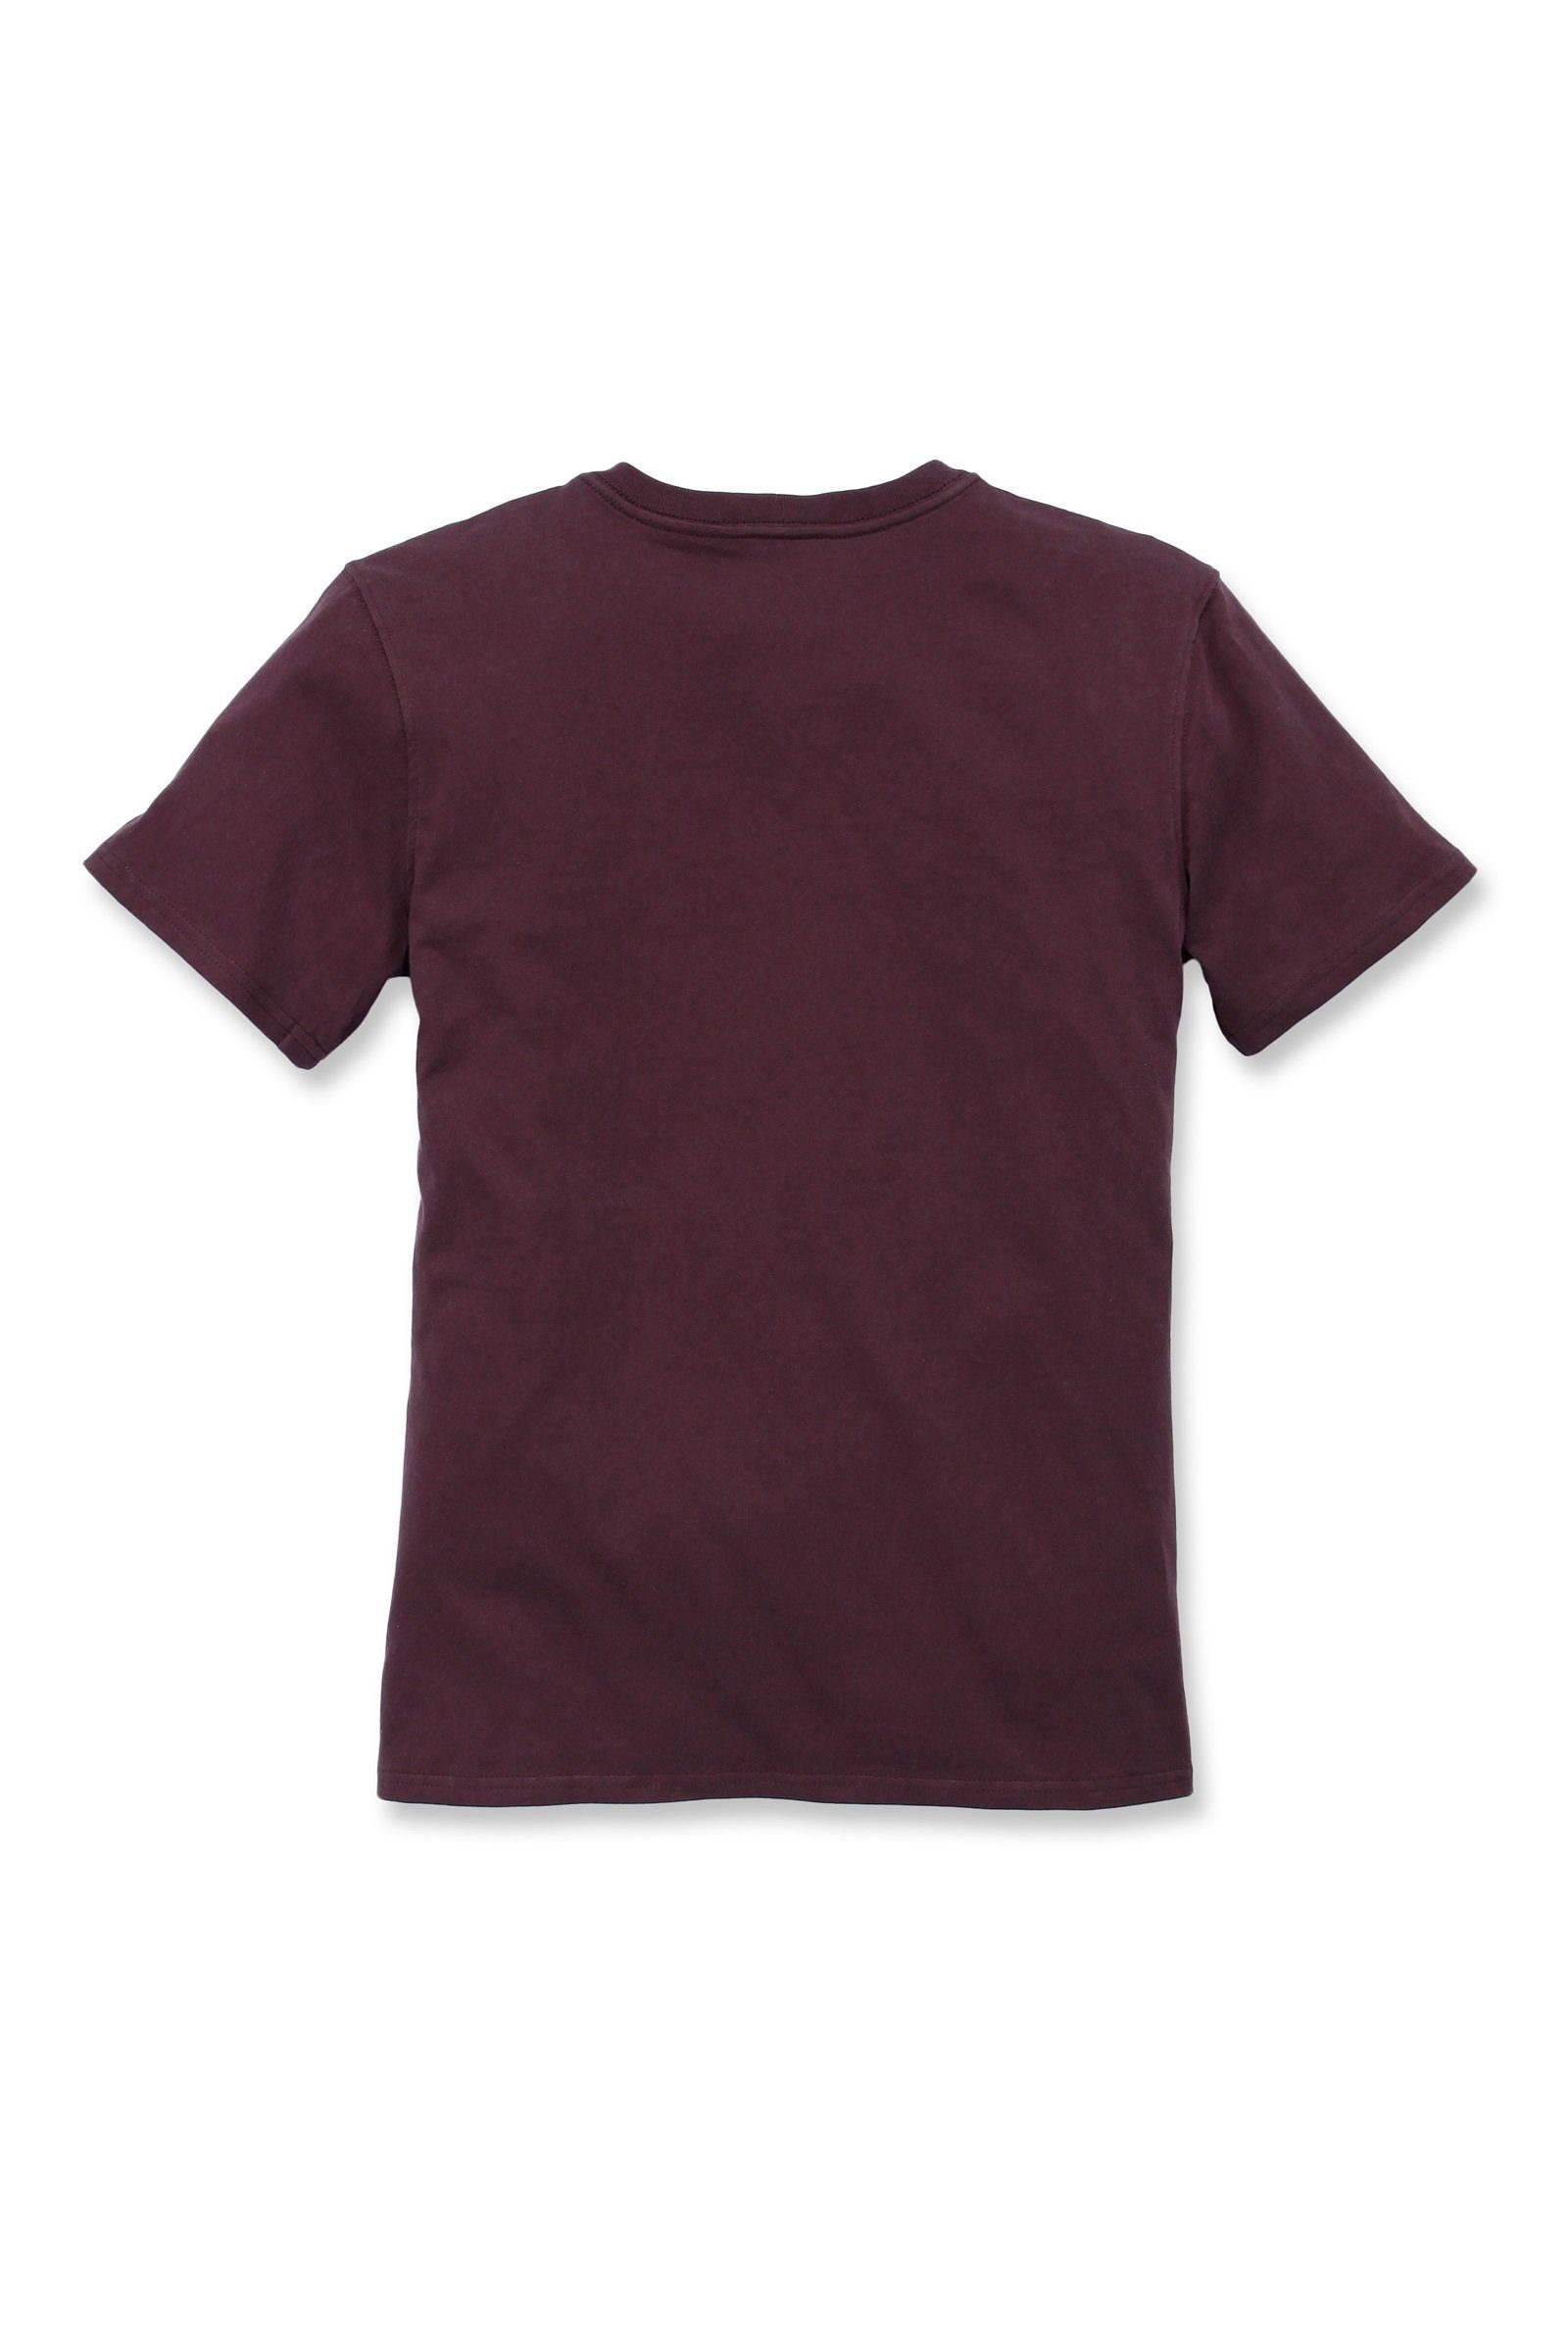 T-Shirt Carhartt Damen deep Short-Sleeve Loose T-Shirt Pocket Heavyweight Fit Adult wine Carhartt